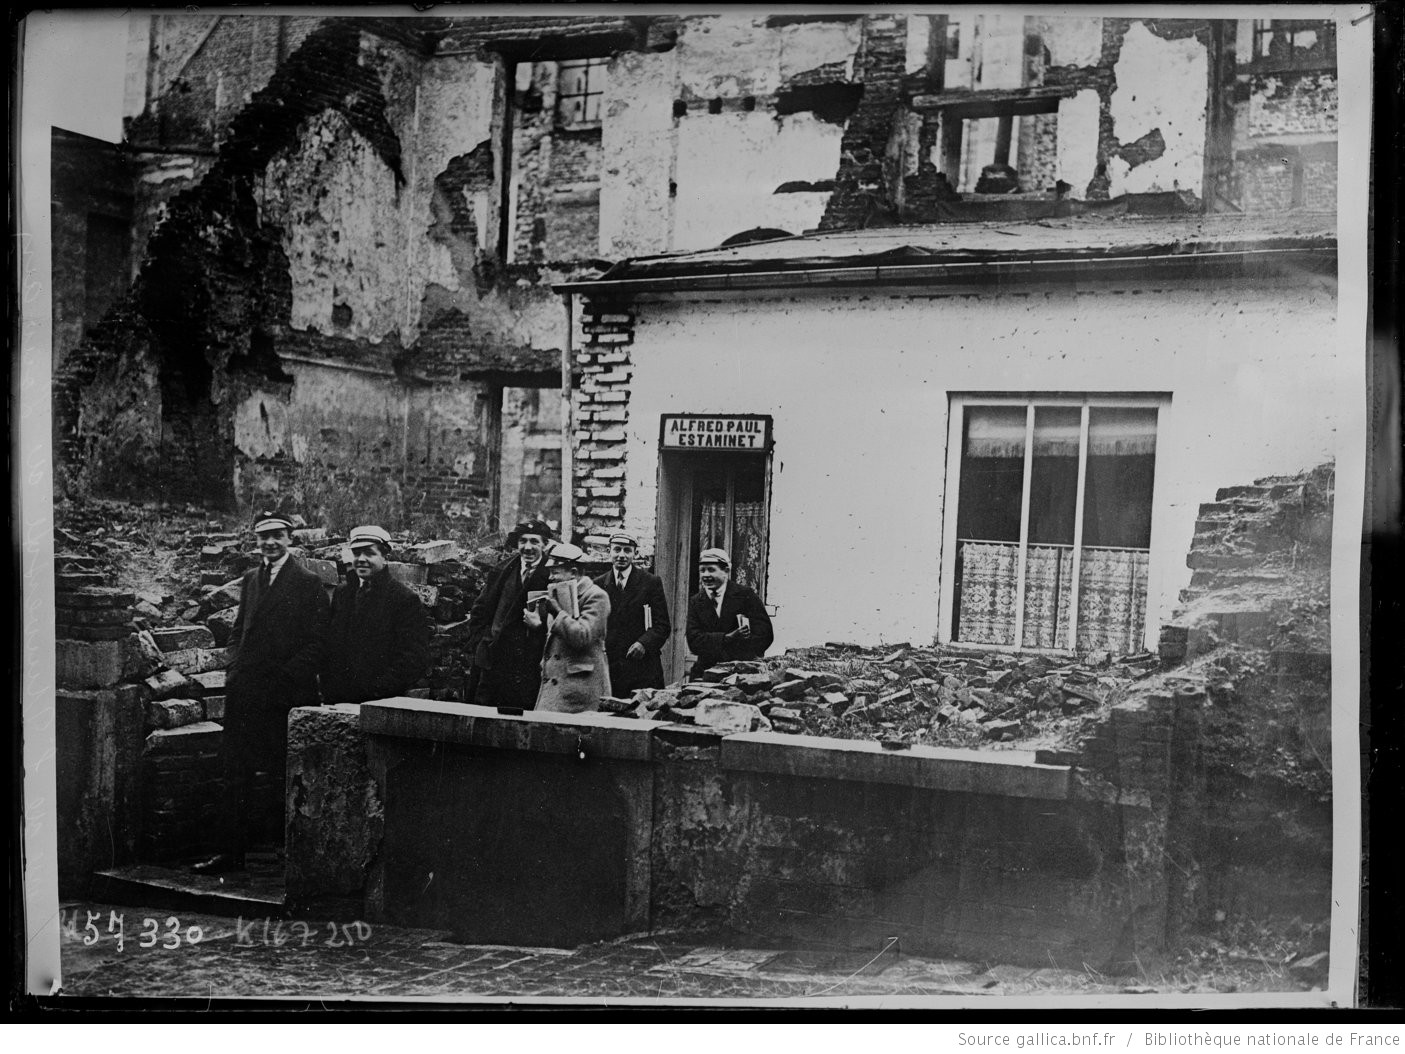 Etudiants sortant d'un estaminet dans les ruines de la rue de l'université à Louvain, 1919